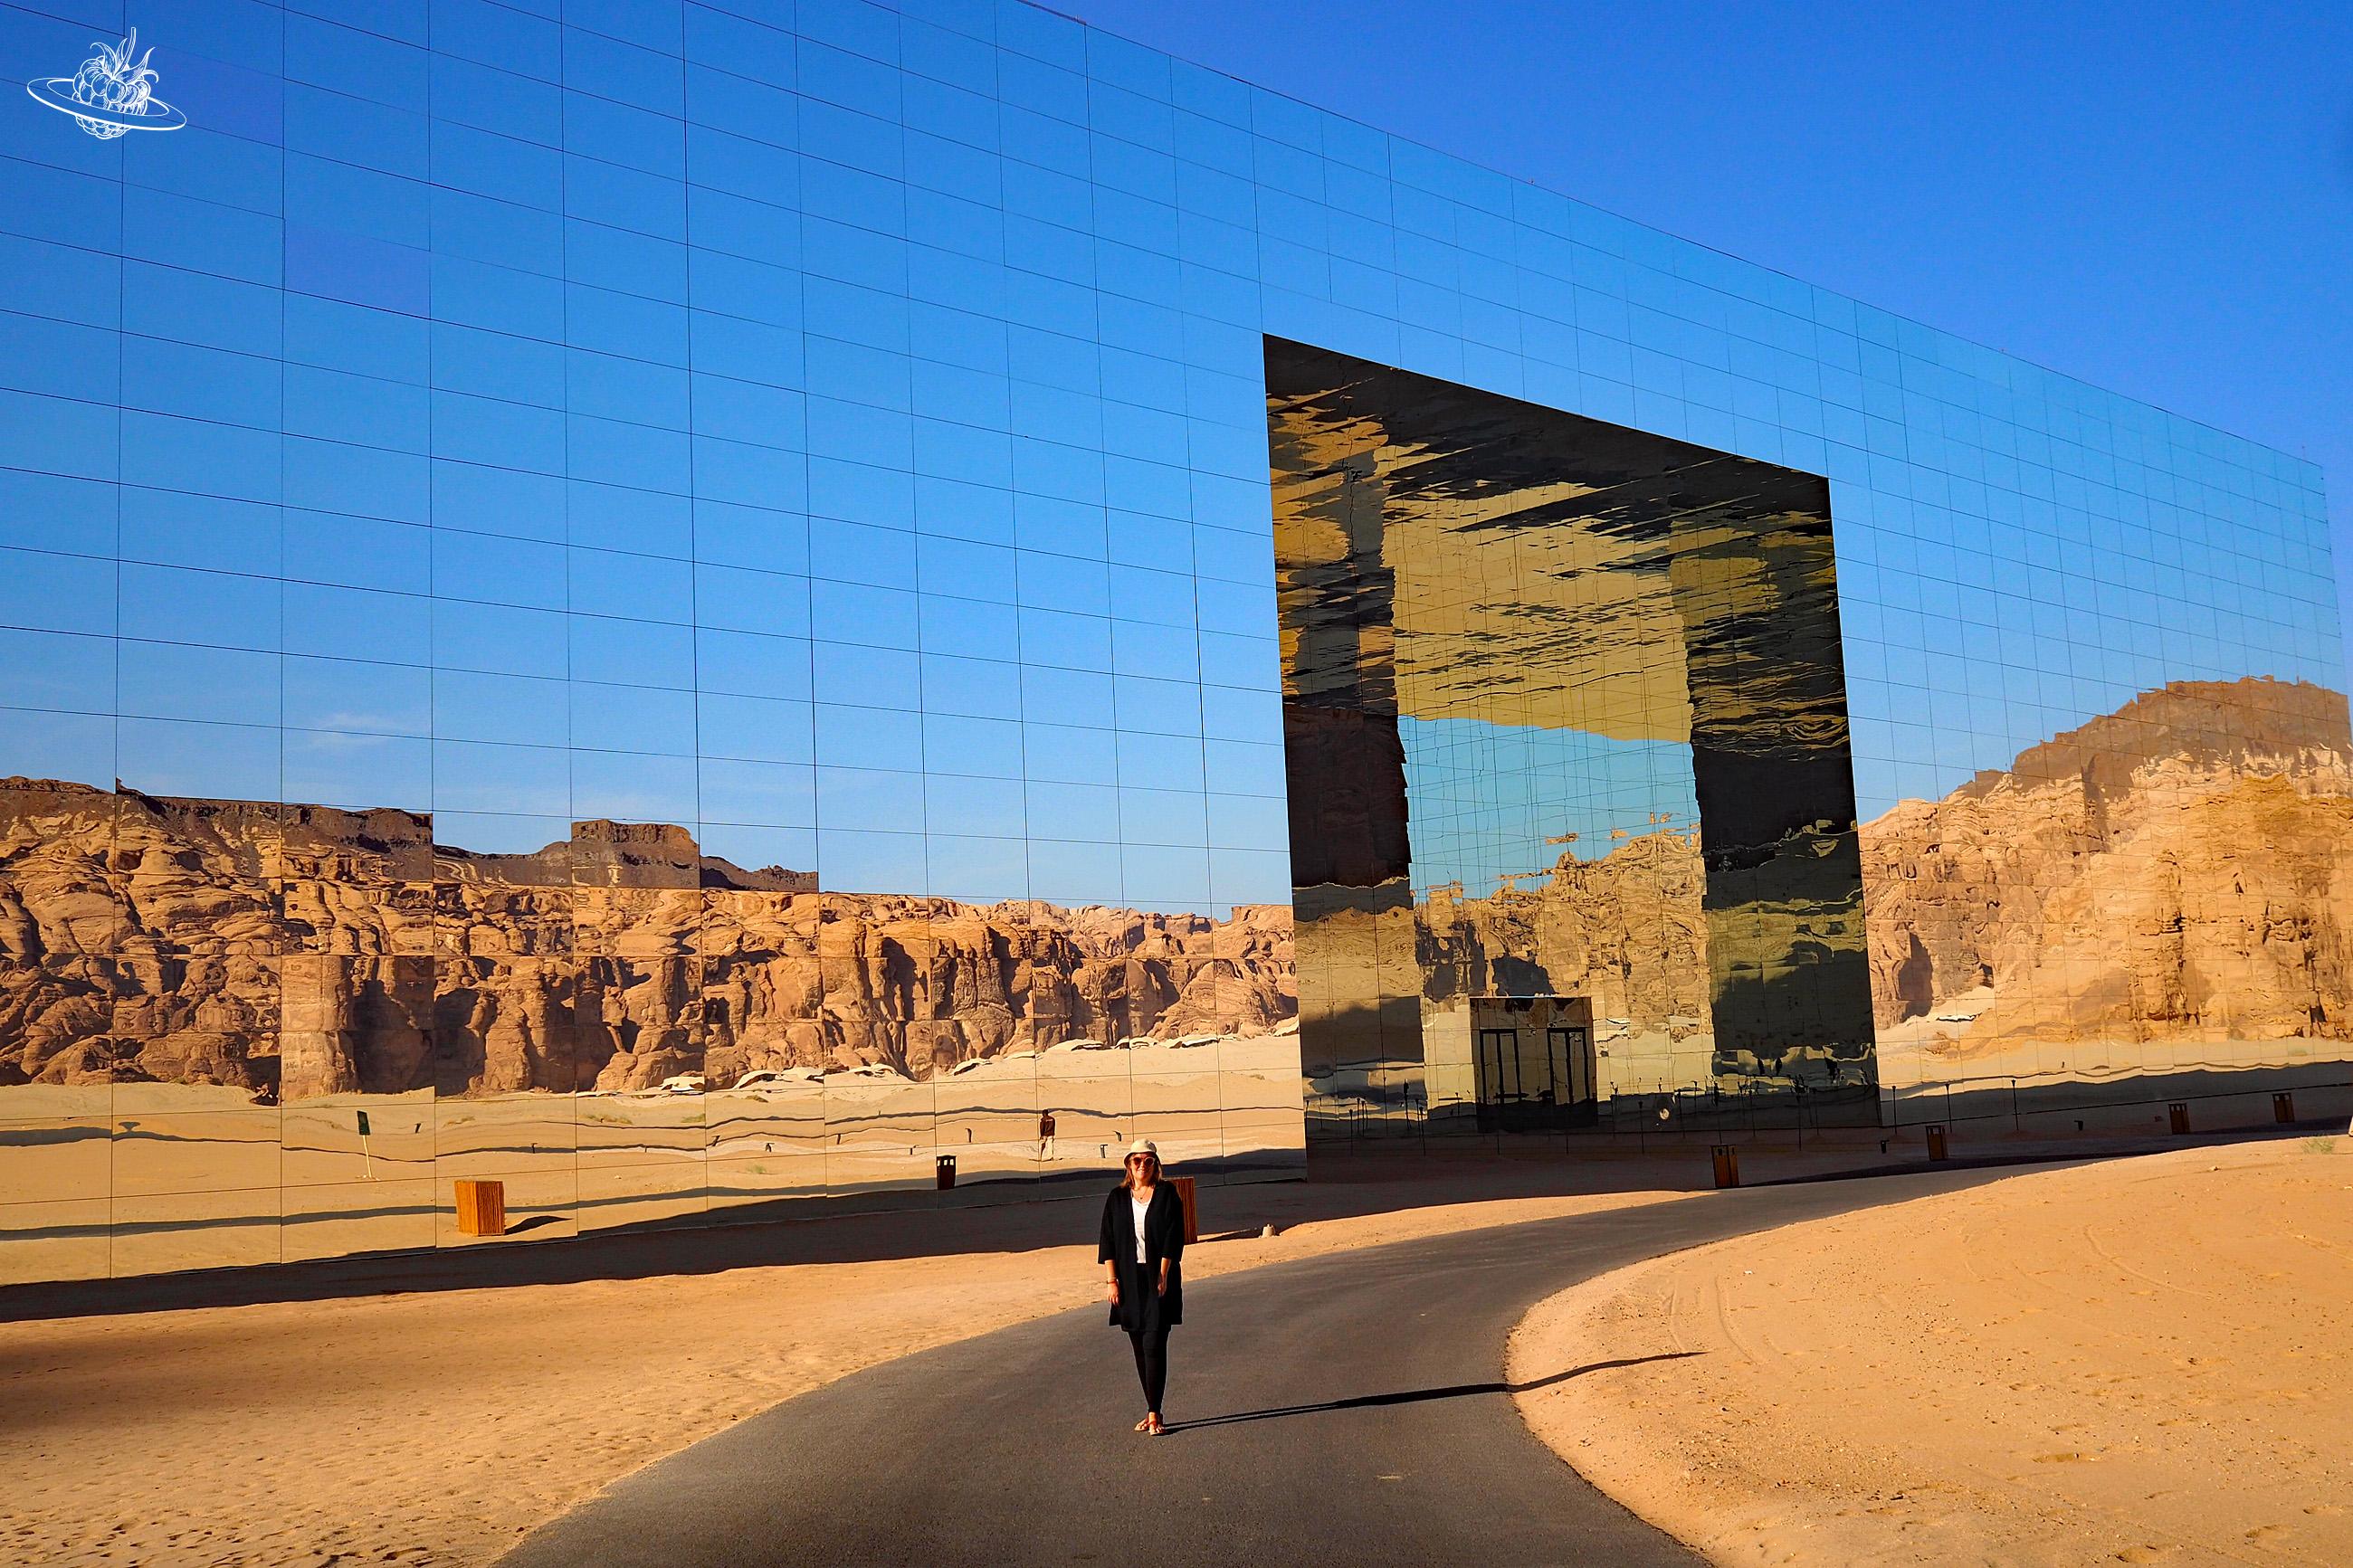 Frau vor Spiegelgebäude in der Wüste